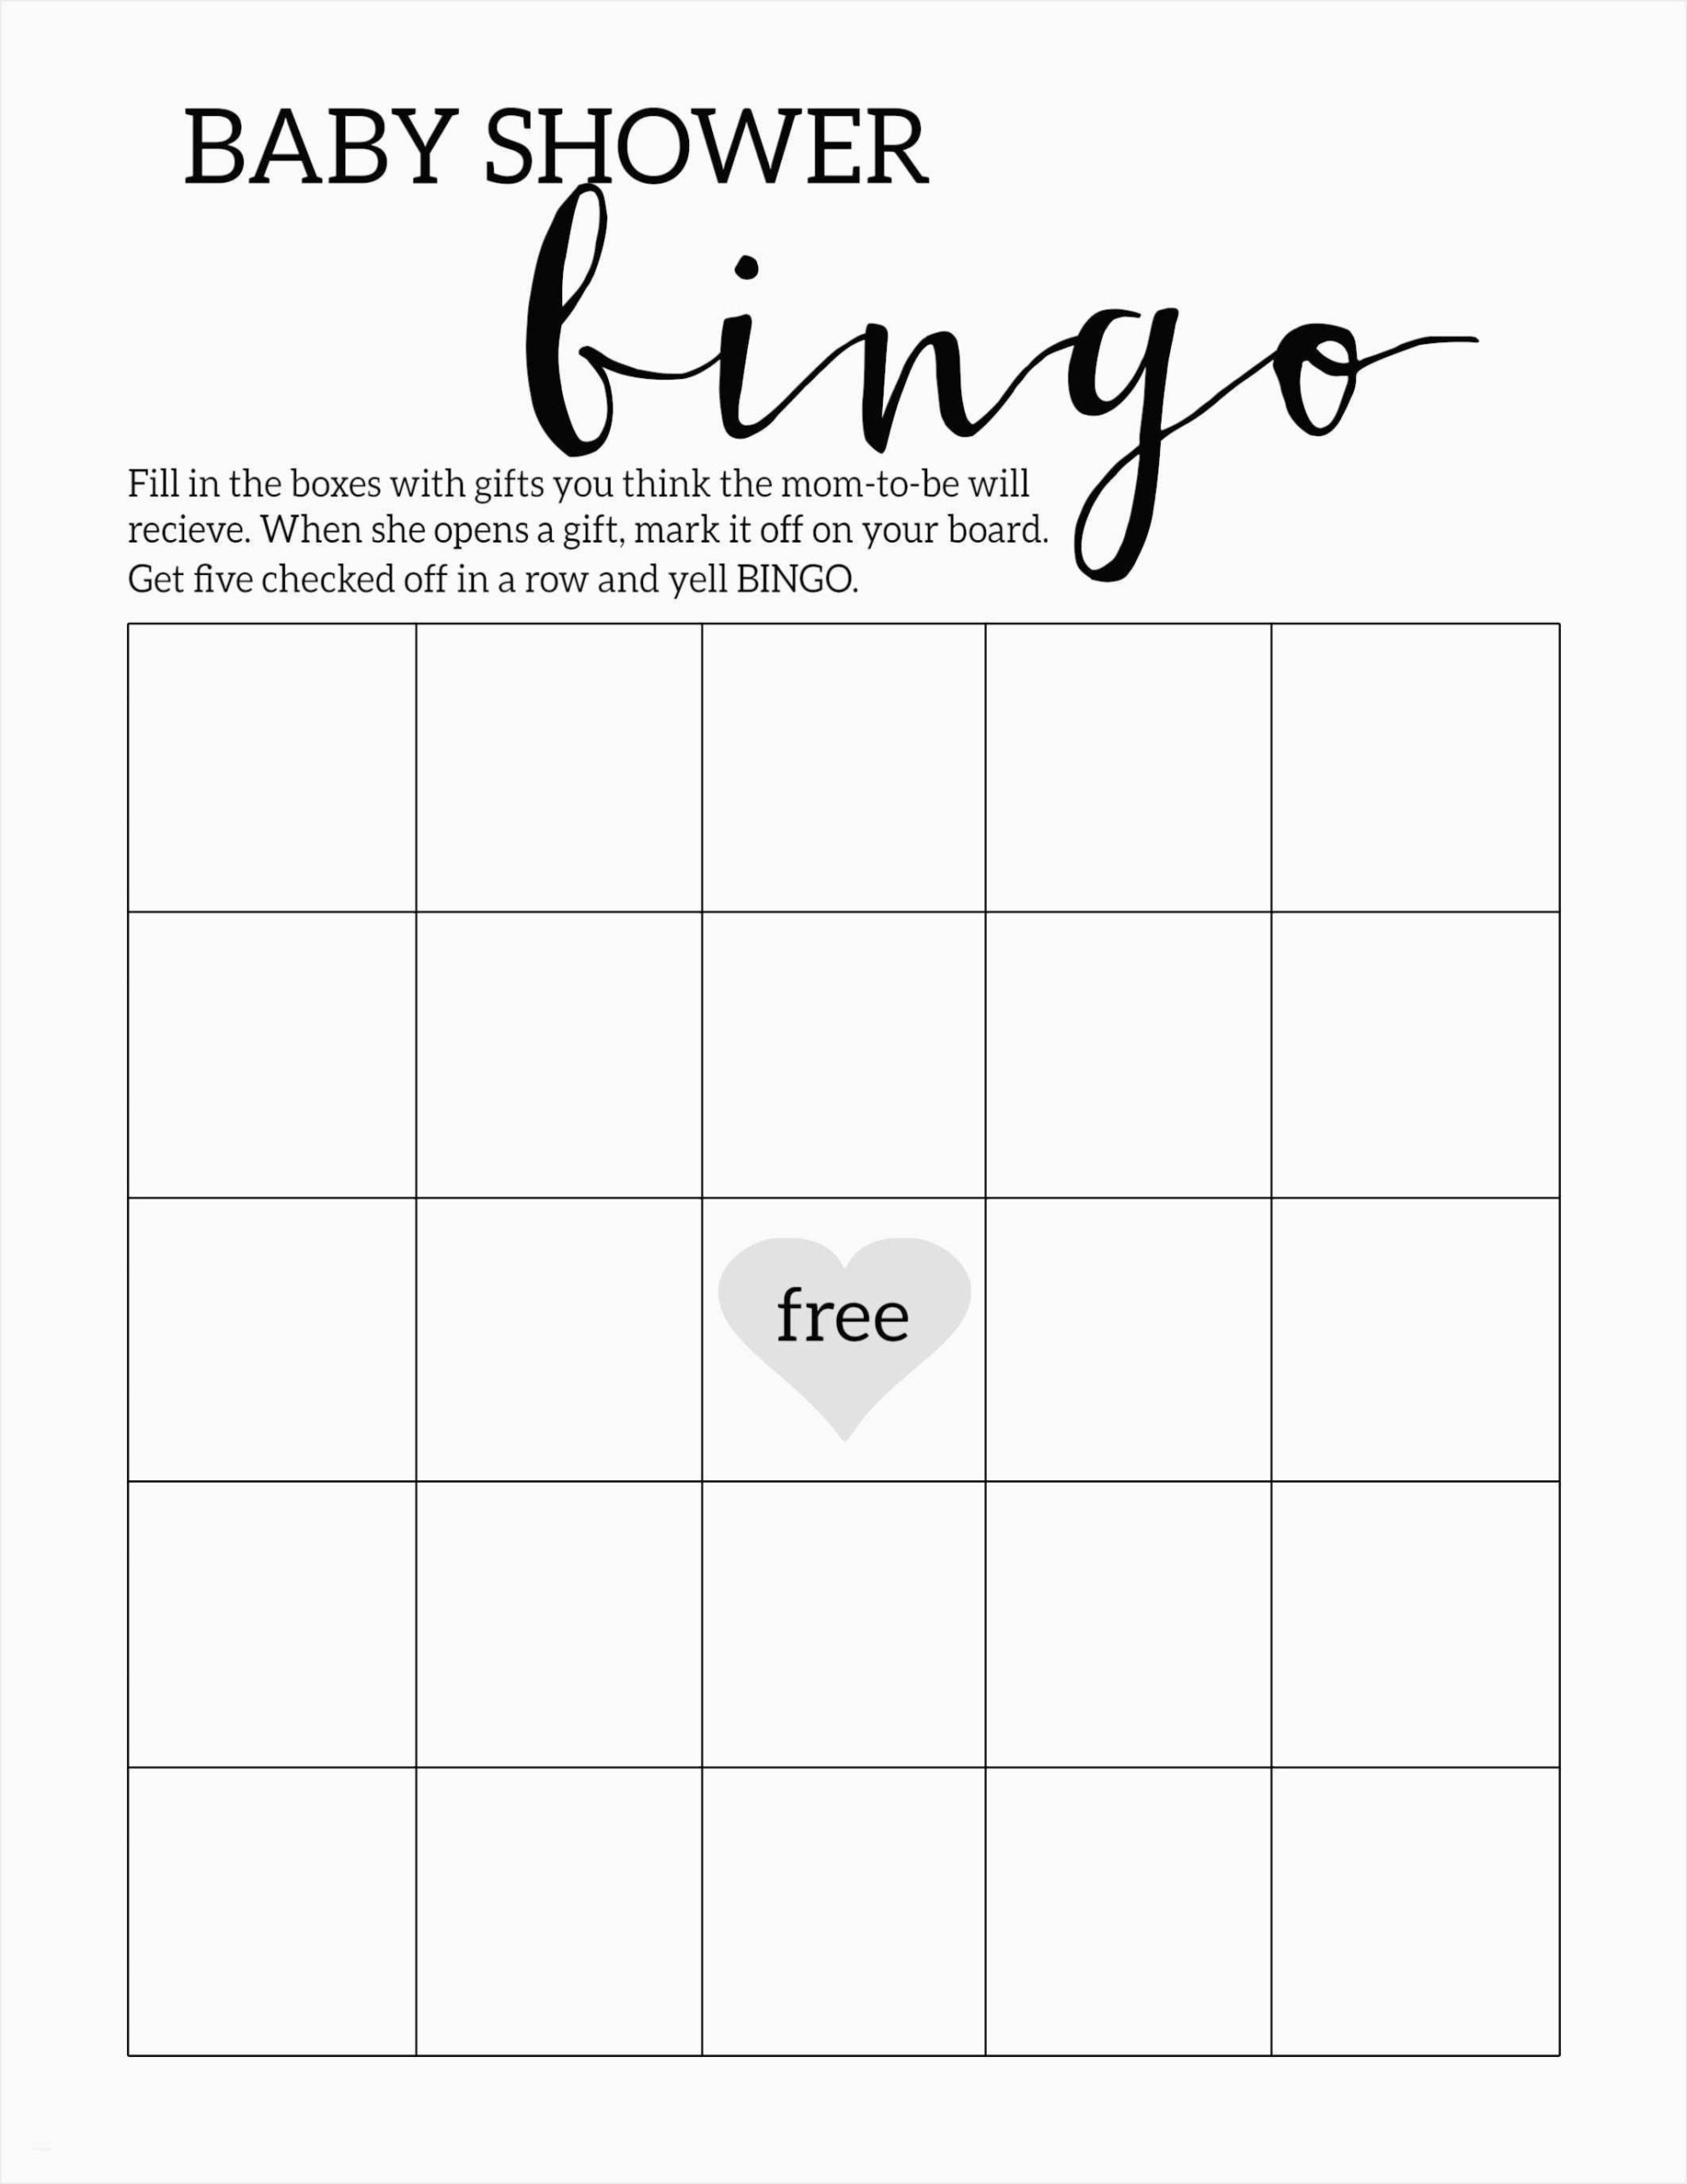 Bingo Card Template Microsoft Word Within Blank Bingo Card Template Microsoft Word